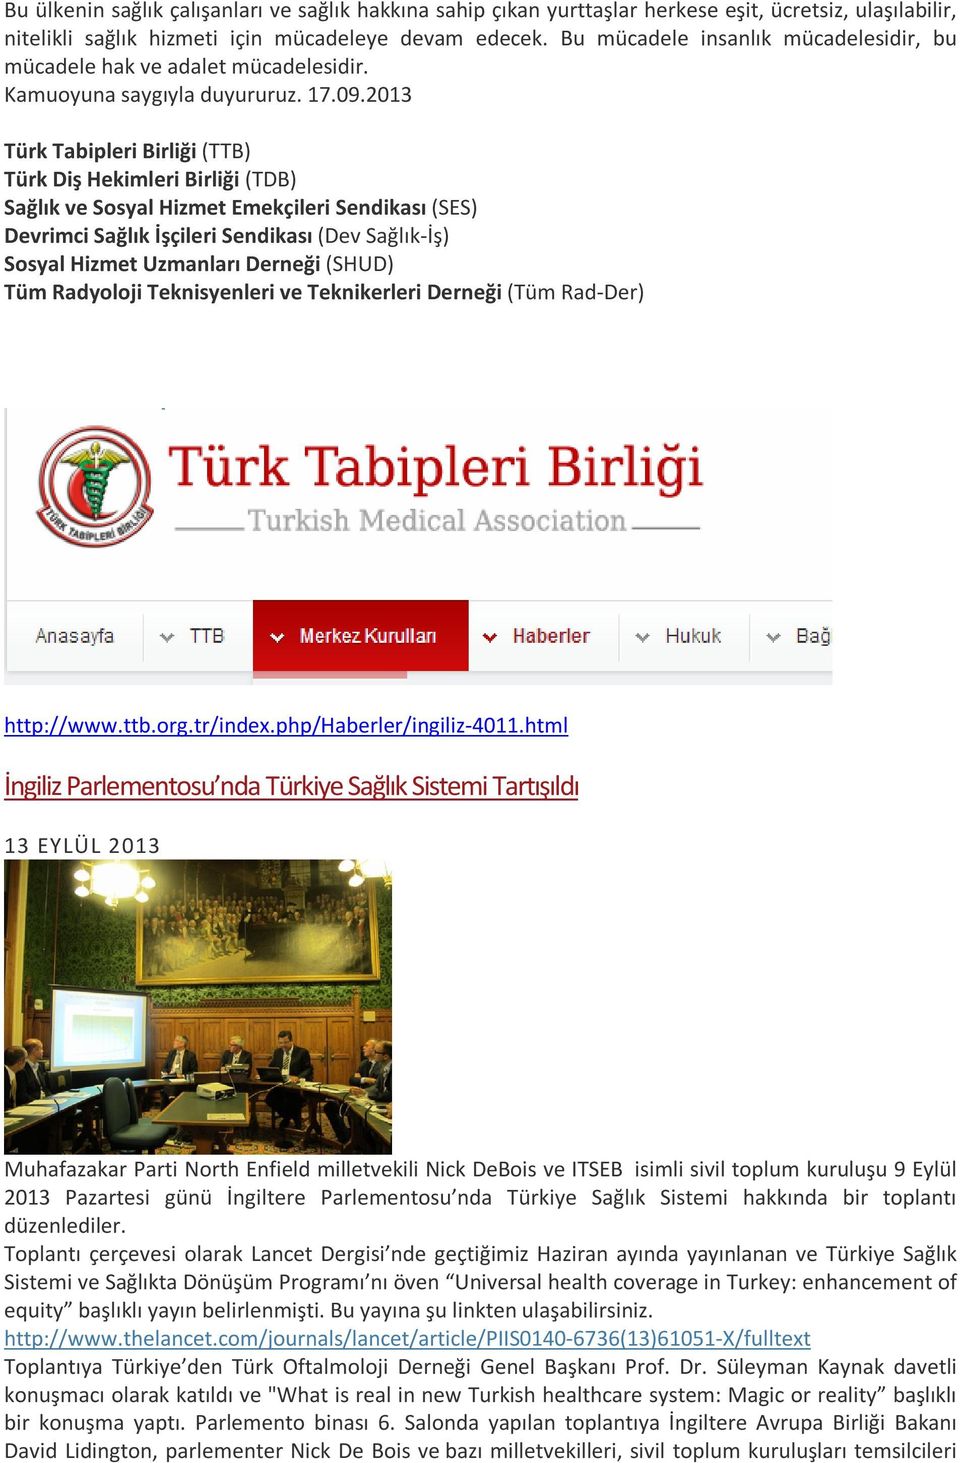 2013 Türk Tabipleri Birliği (TTB) Türk Diş Hekimleri Birliği (TDB) Sağlık ve Sosyal Hizmet Emekçileri Sendikası (SES) Devrimci Sağlık İşçileri Sendikası (Dev Sağlık-İş) Sosyal Hizmet Uzmanları